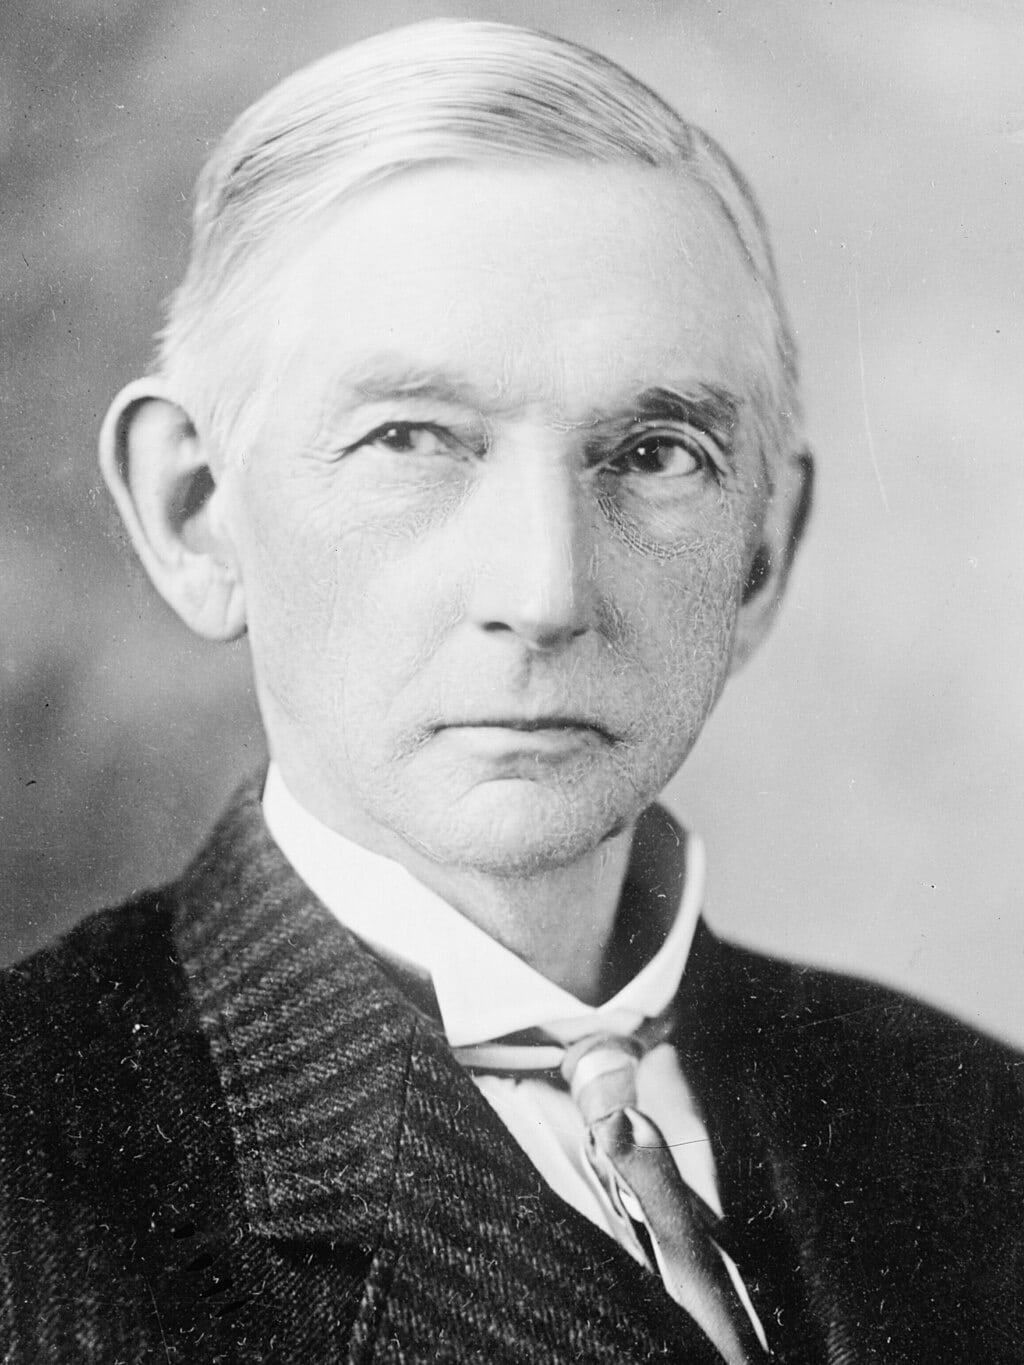 William J. Stone portrait